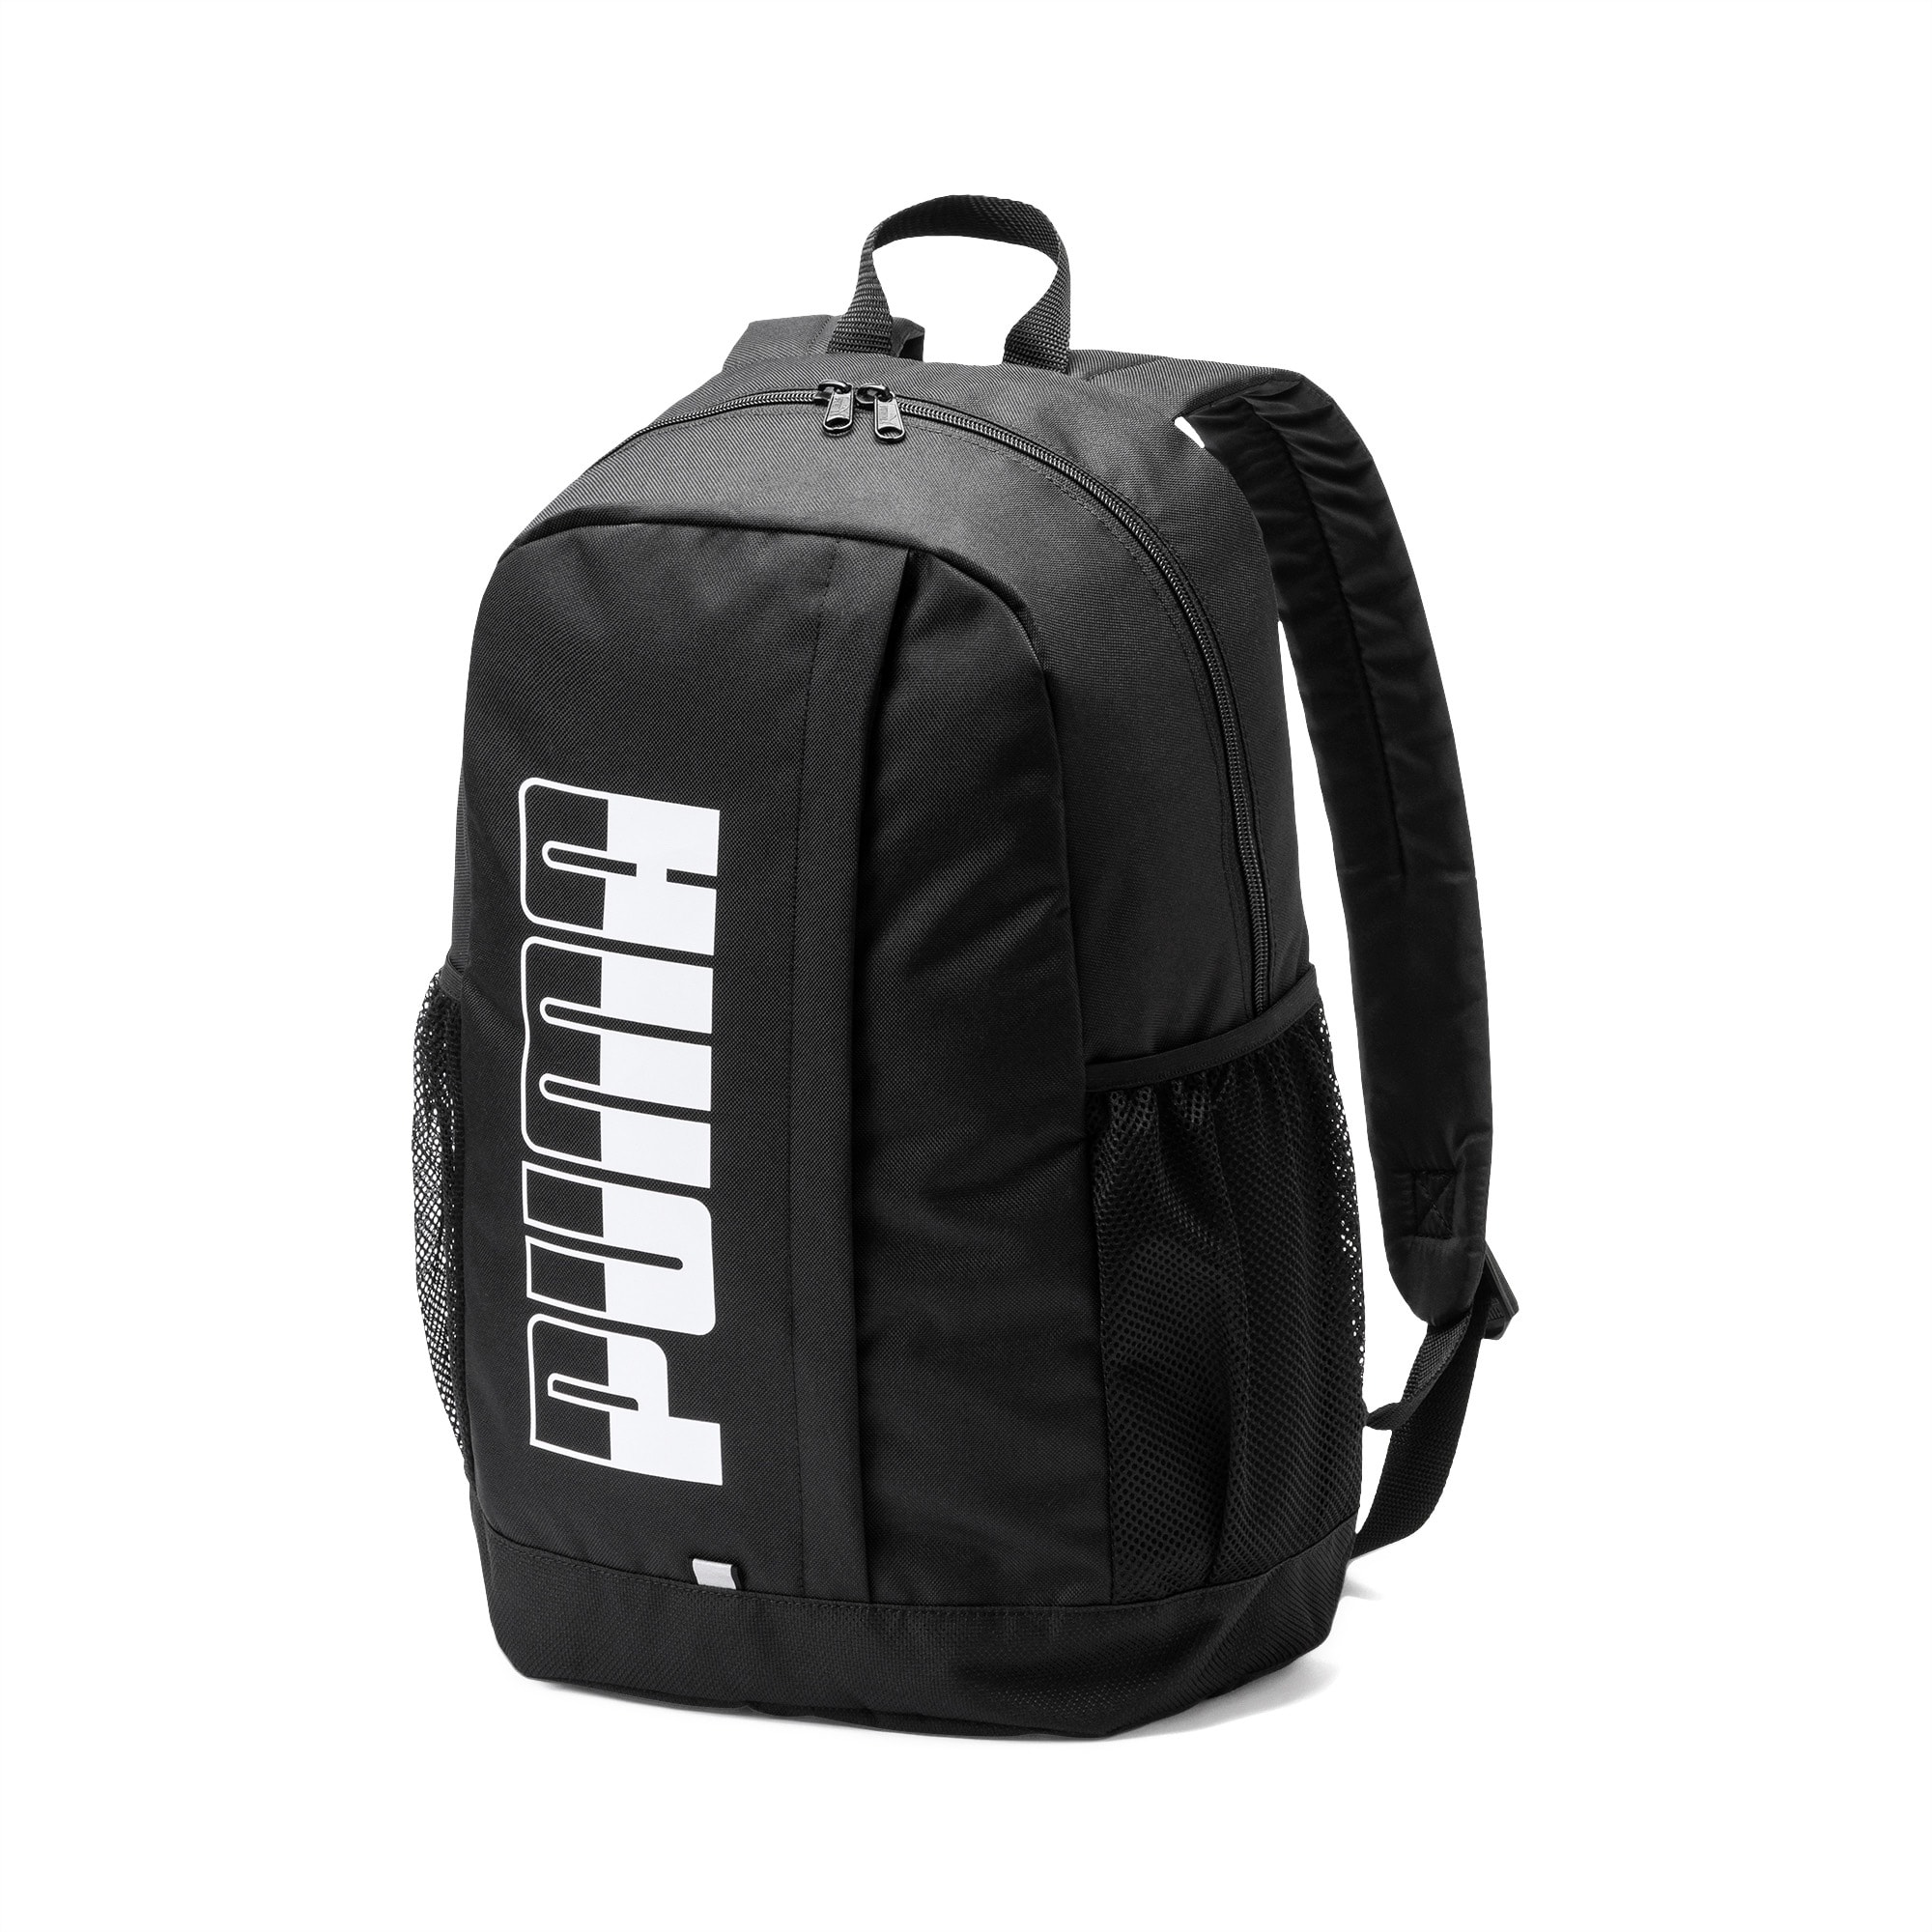 Plus II Backpack | Puma Black | PUMA Backpacks | PUMA